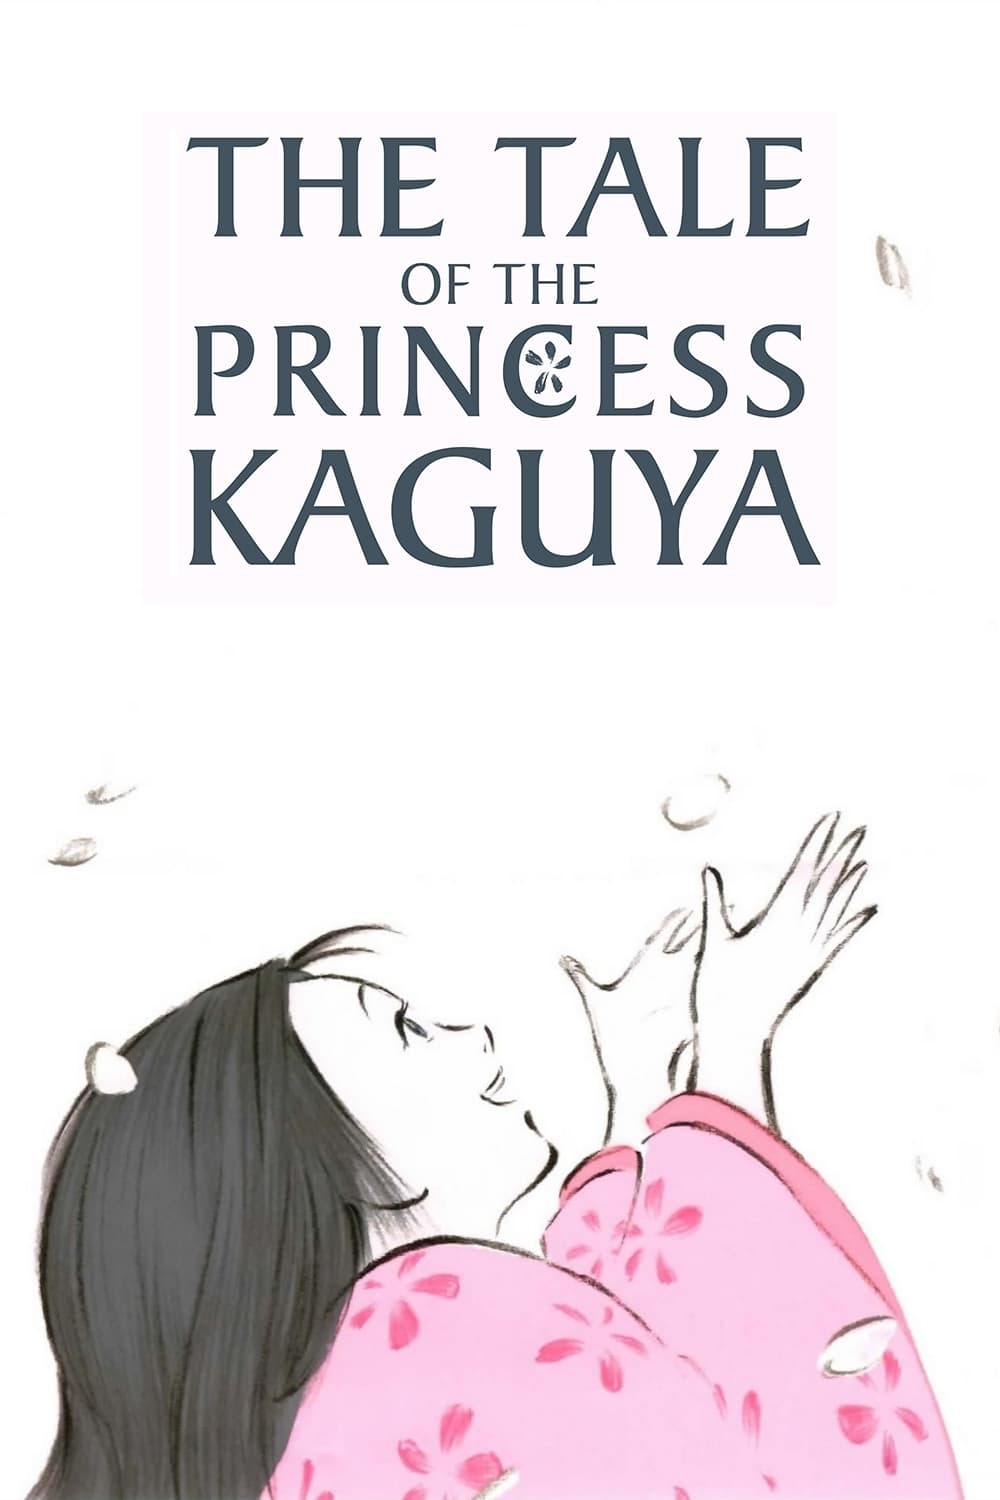 the tale of princess kaguya 720p movies